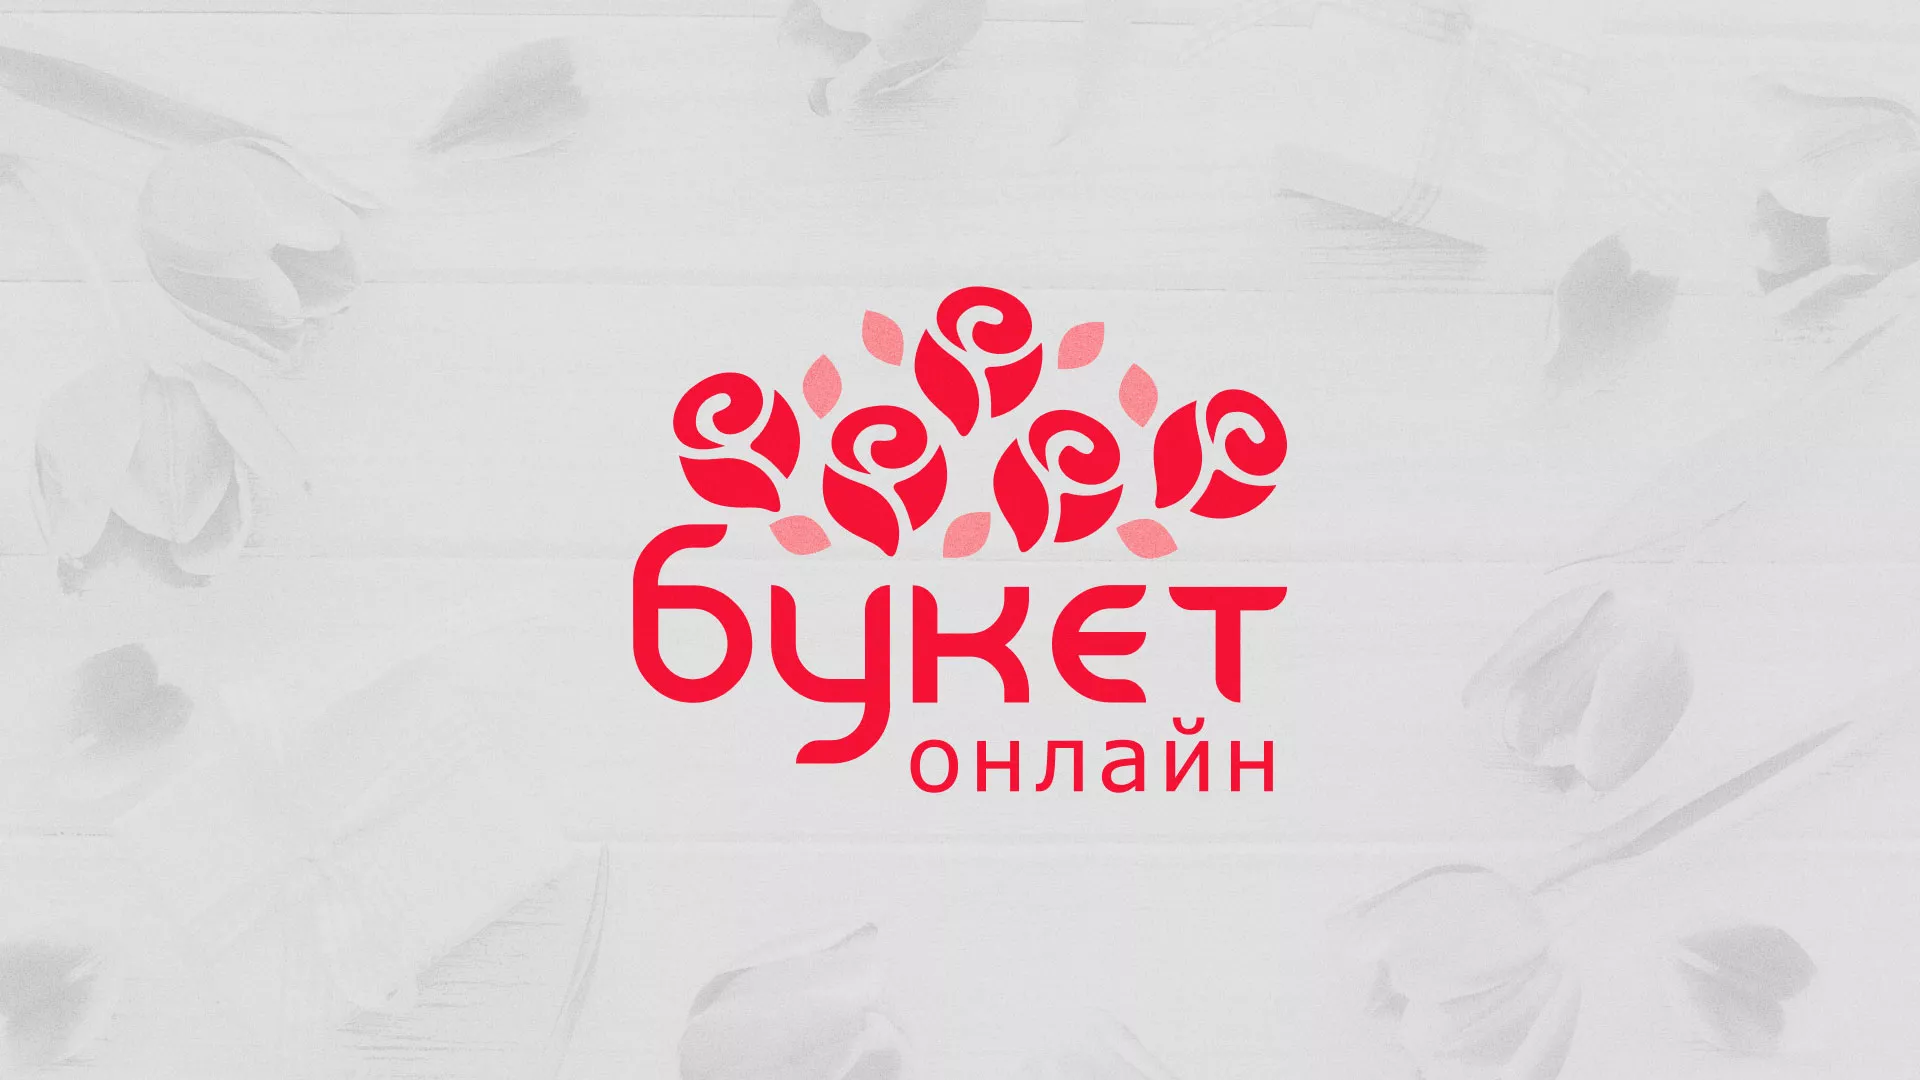 Создание интернет-магазина «Букет-онлайн» по цветам в Ясном